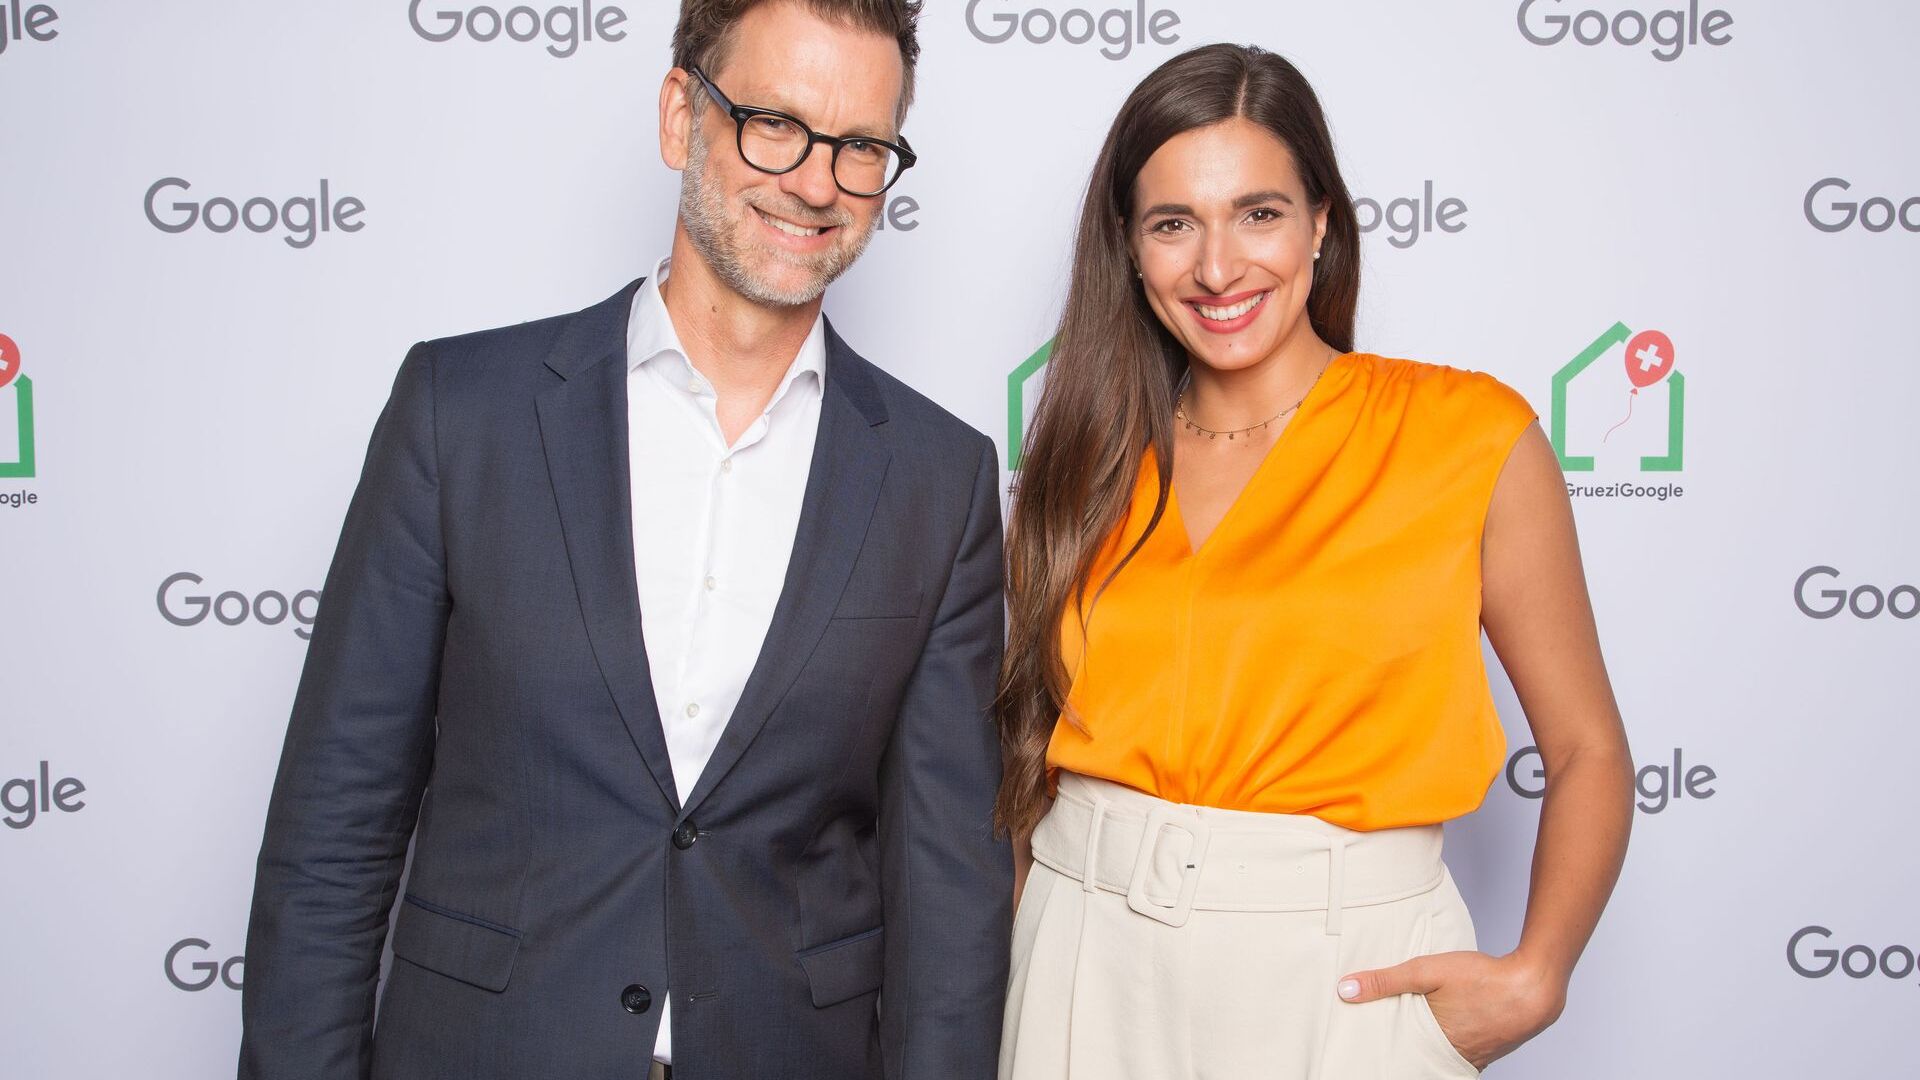 Andreas Briese, državni direktor YouTube-a u Njemačkoj i regionalni direktor za srednju Evropu, i Sally sa Sally's Welt-a (YouTube kanal) prisustvovali su zvaničnom otvaranju novog Google Campus Europaallee u Cirihu 27. juna 2022.